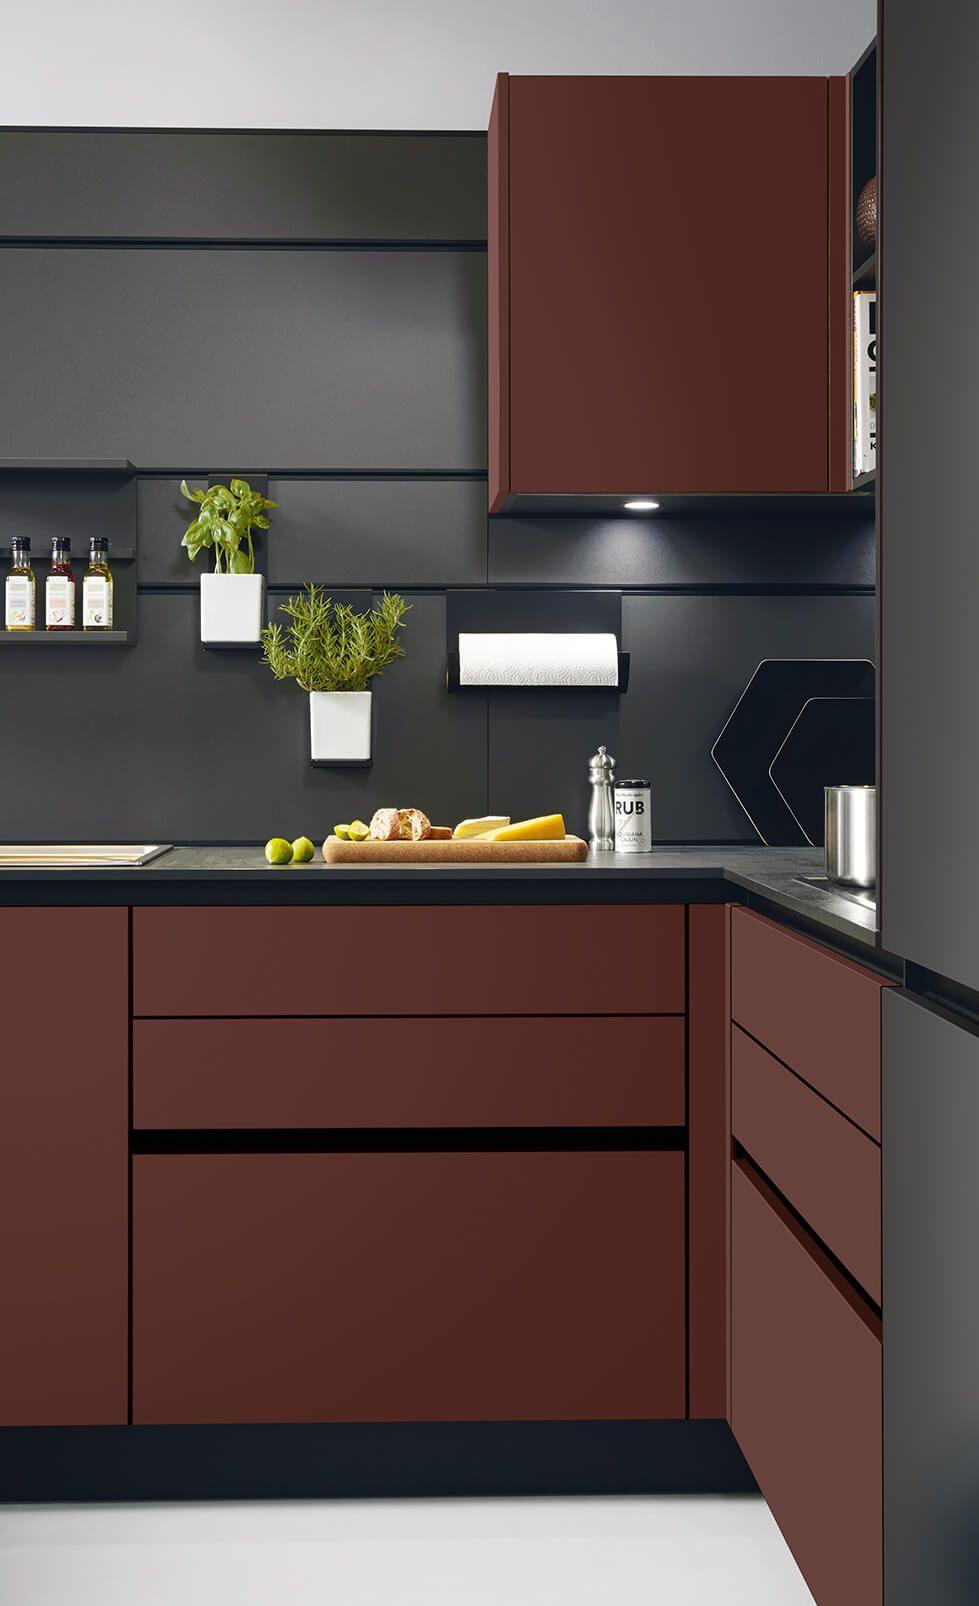 Detailfoto dunkele Küche mit Organisationssystem